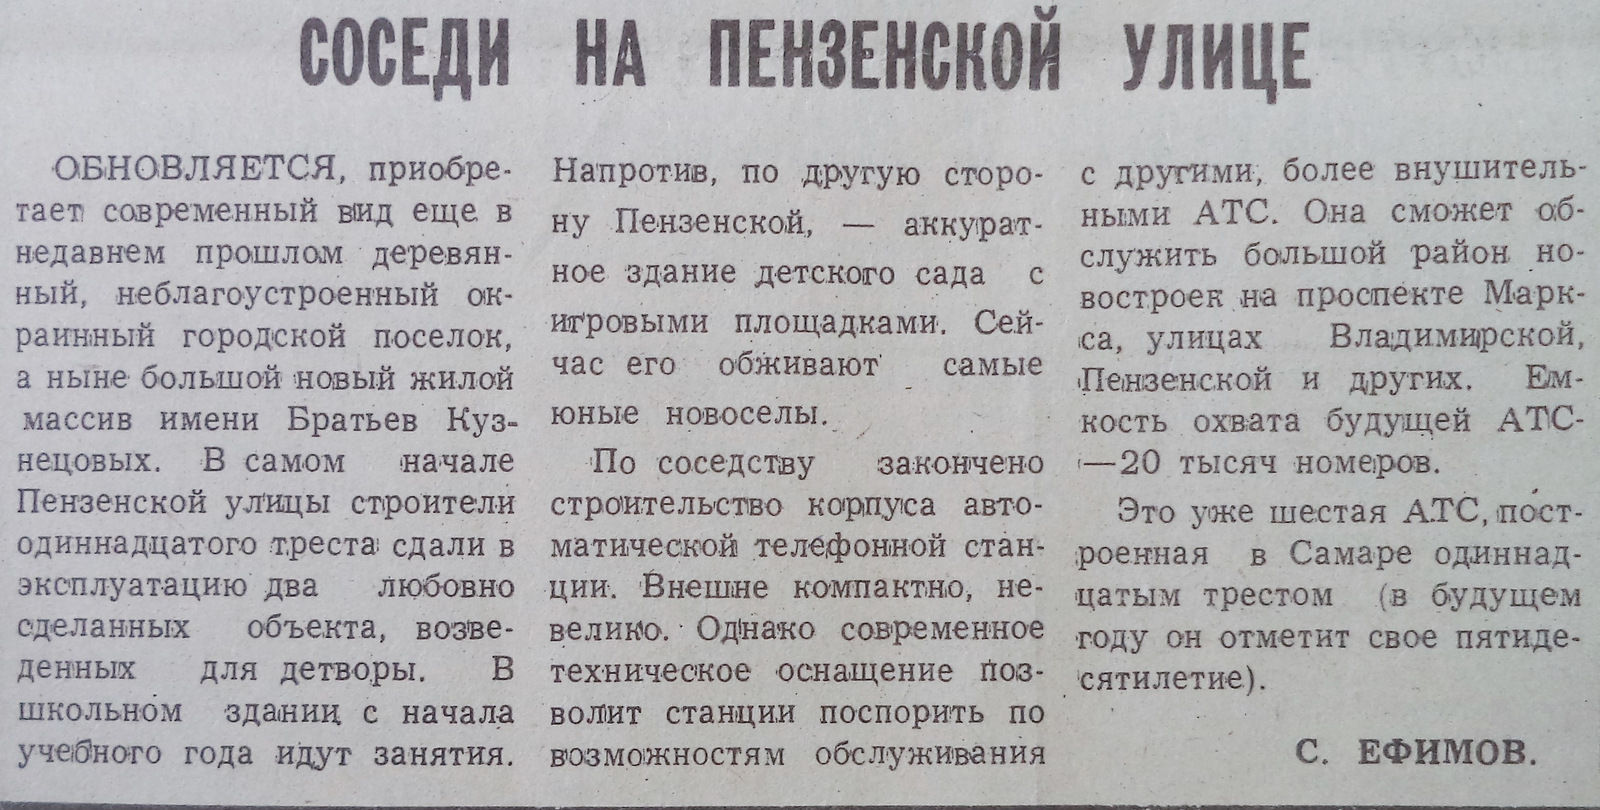 Пензенская-ФОТО-40-ВЗя-1991-12-05-новостр. по Пенз.